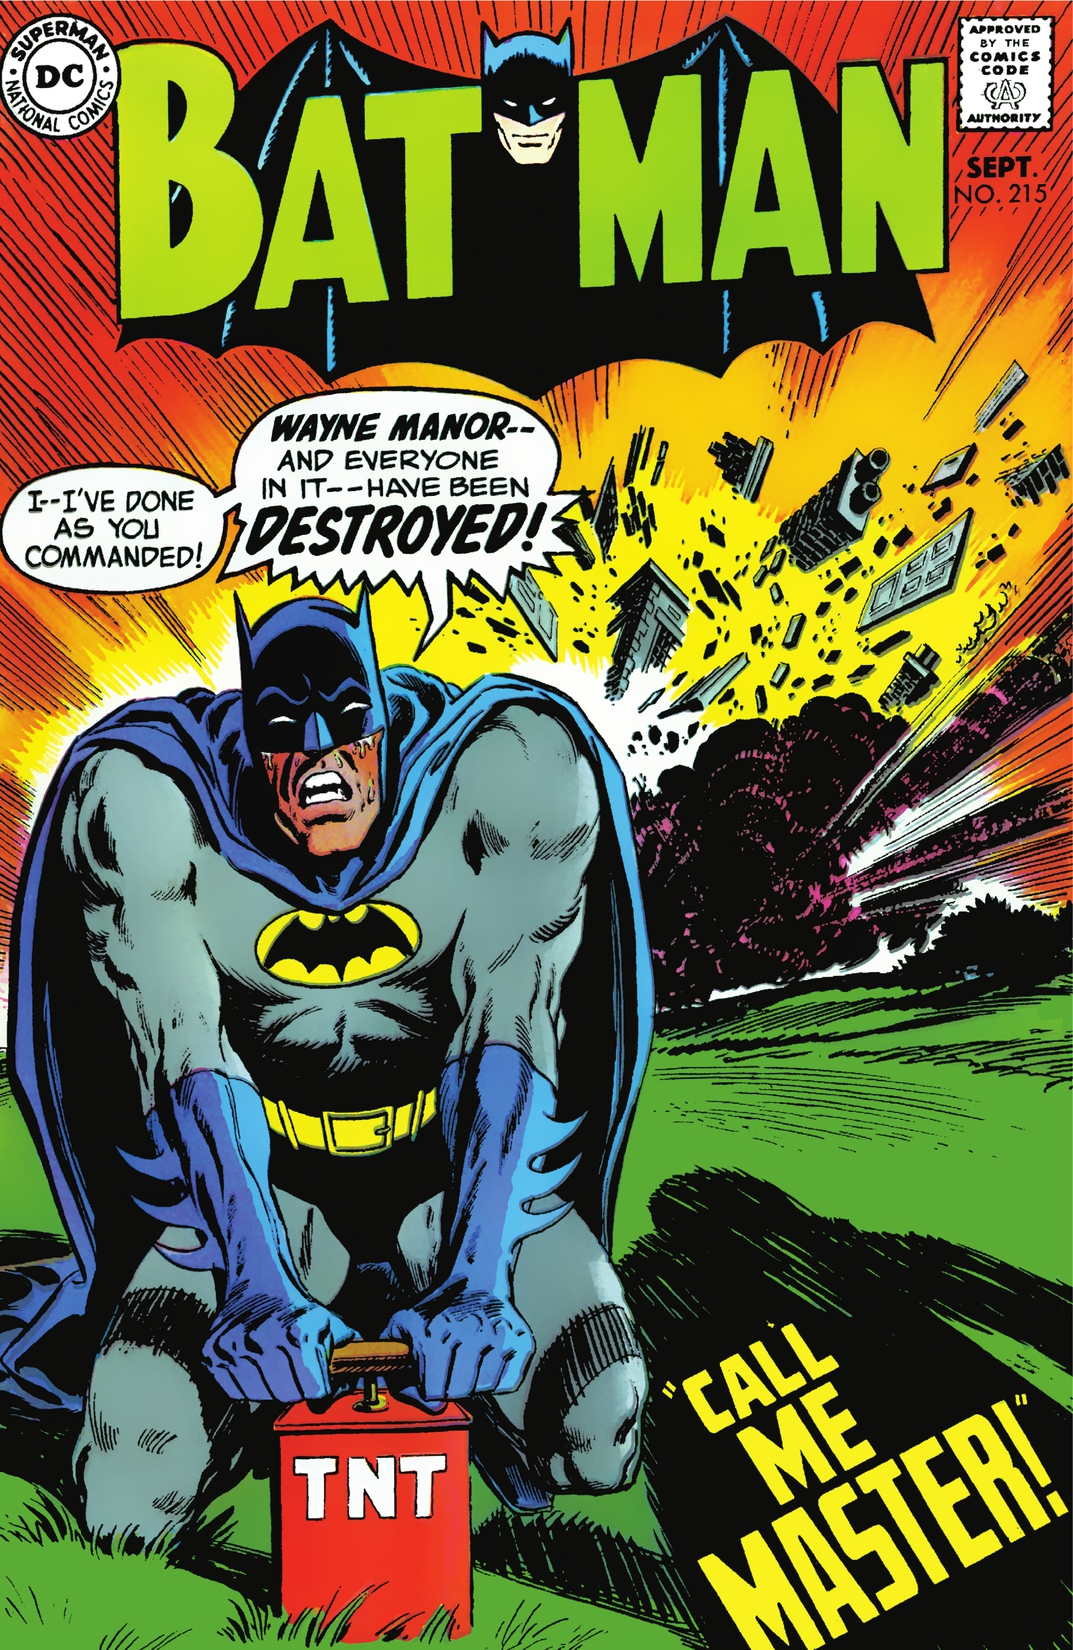 Batman (1940-2011) #215 preview images